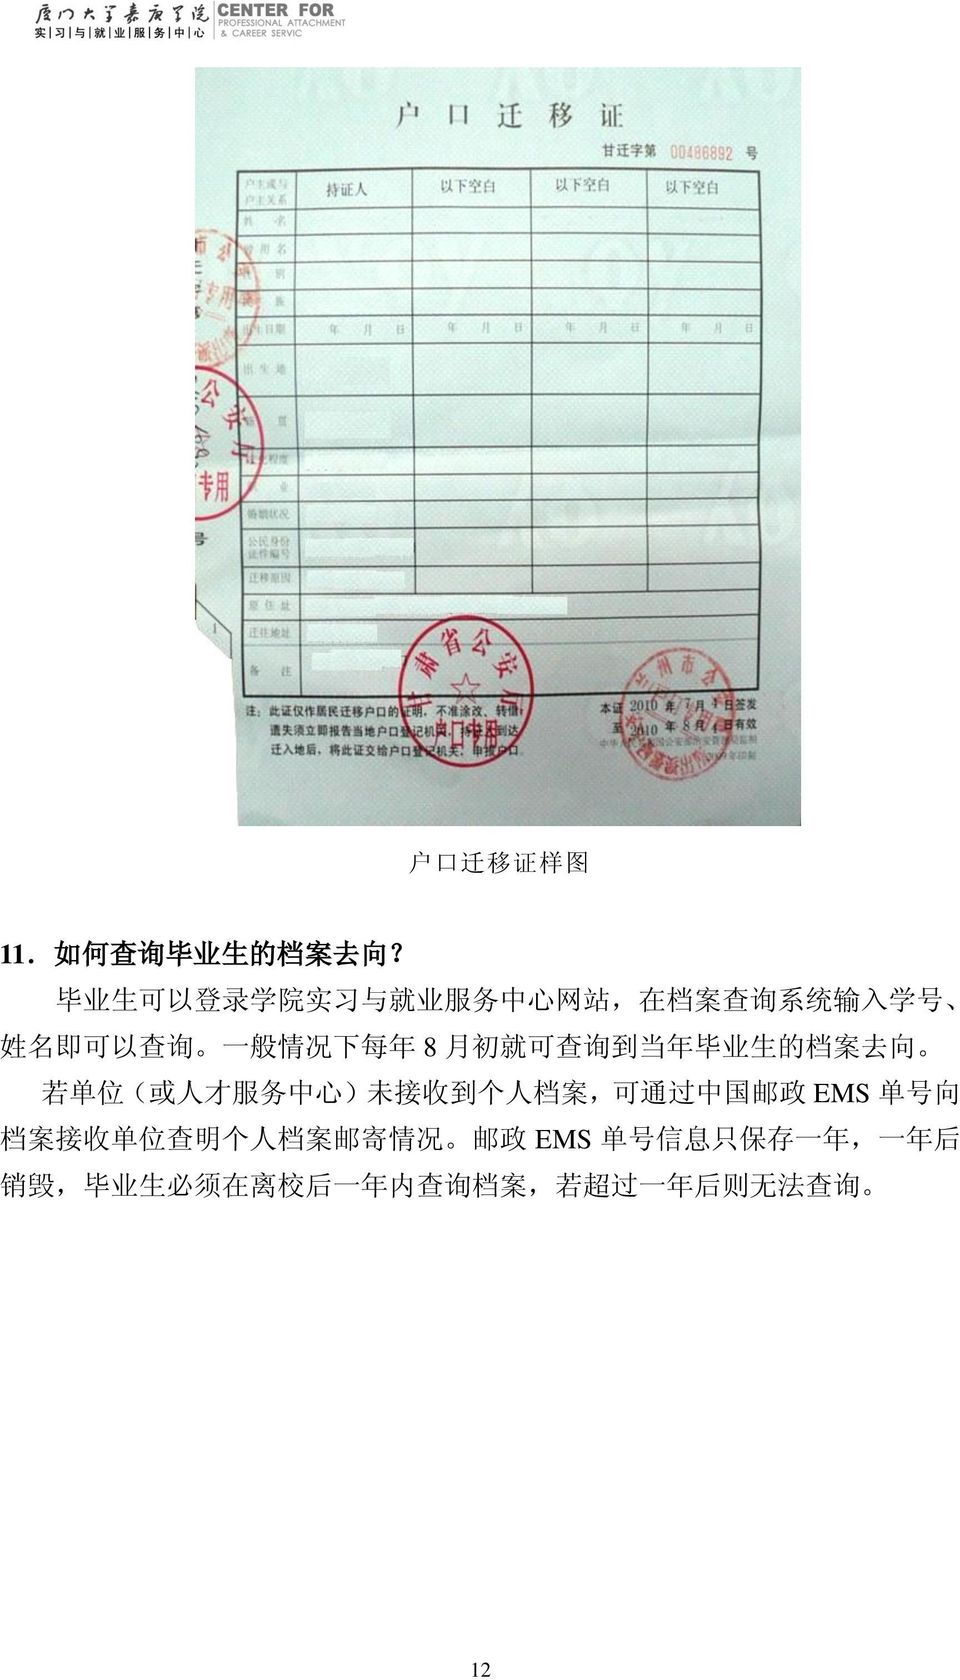 8 月 初 就 可 查 询 到 当 年 毕 业 生 的 档 案 去 向 若 单 位 ( 或 人 才 服 务 中 心 ) 未 接 收 到 个 人 档 案, 可 通 过 中 国 邮 政